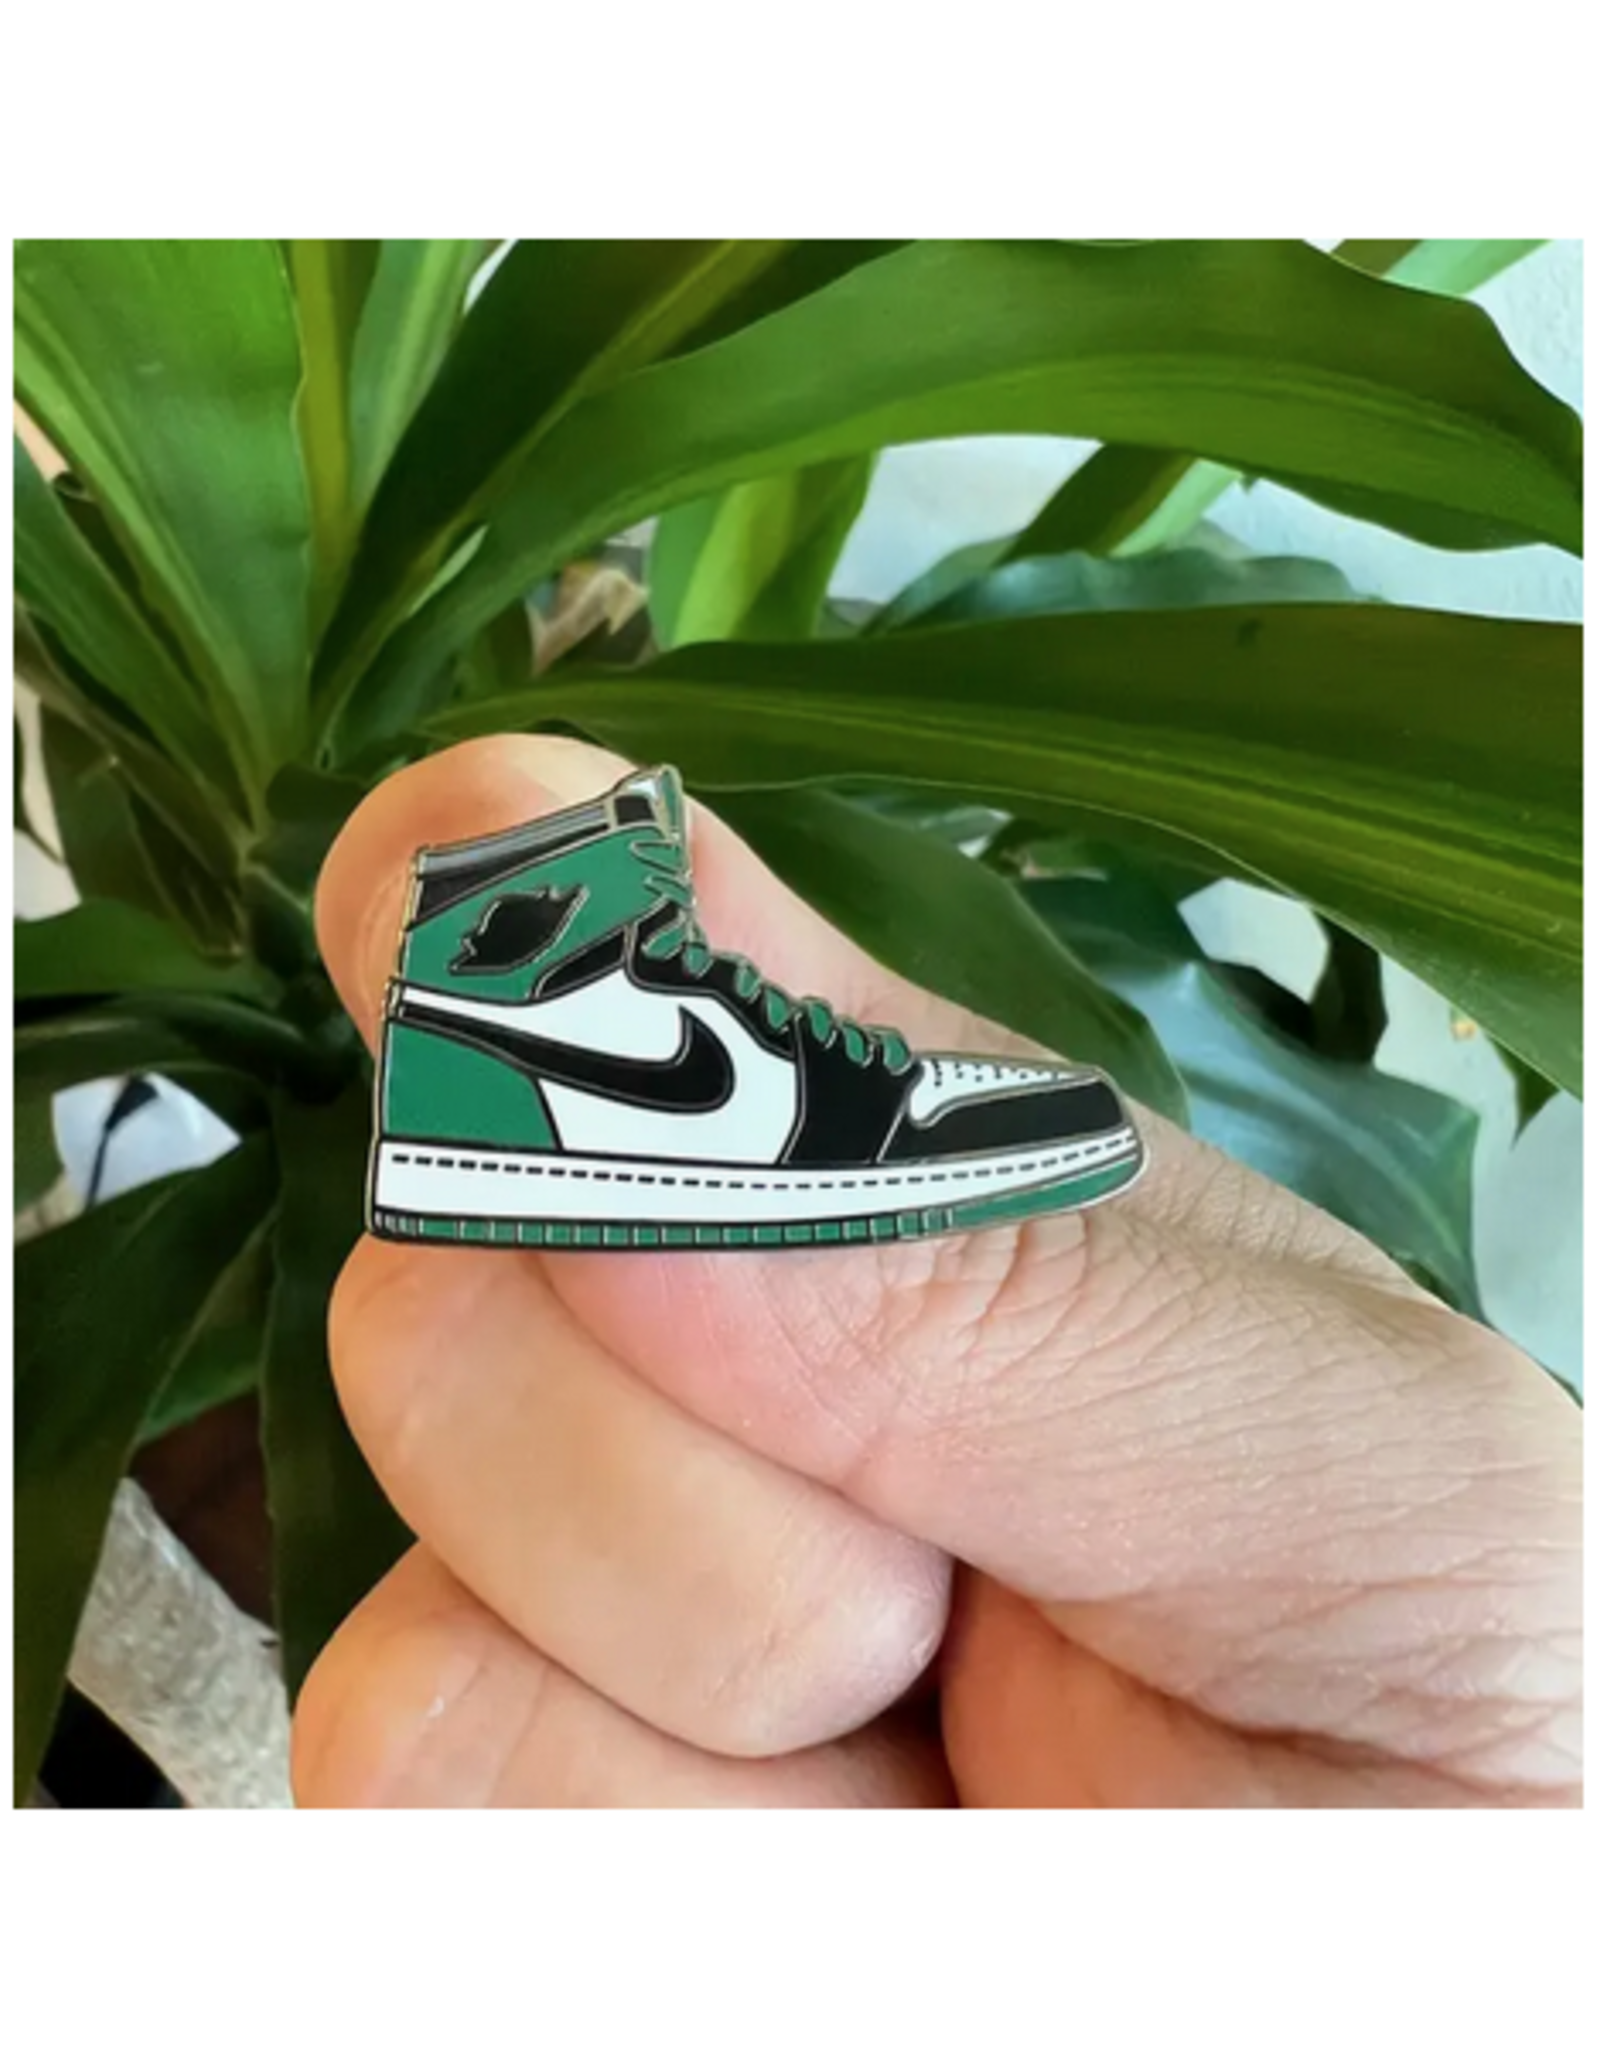 Green Air Jordan Enamel Pin